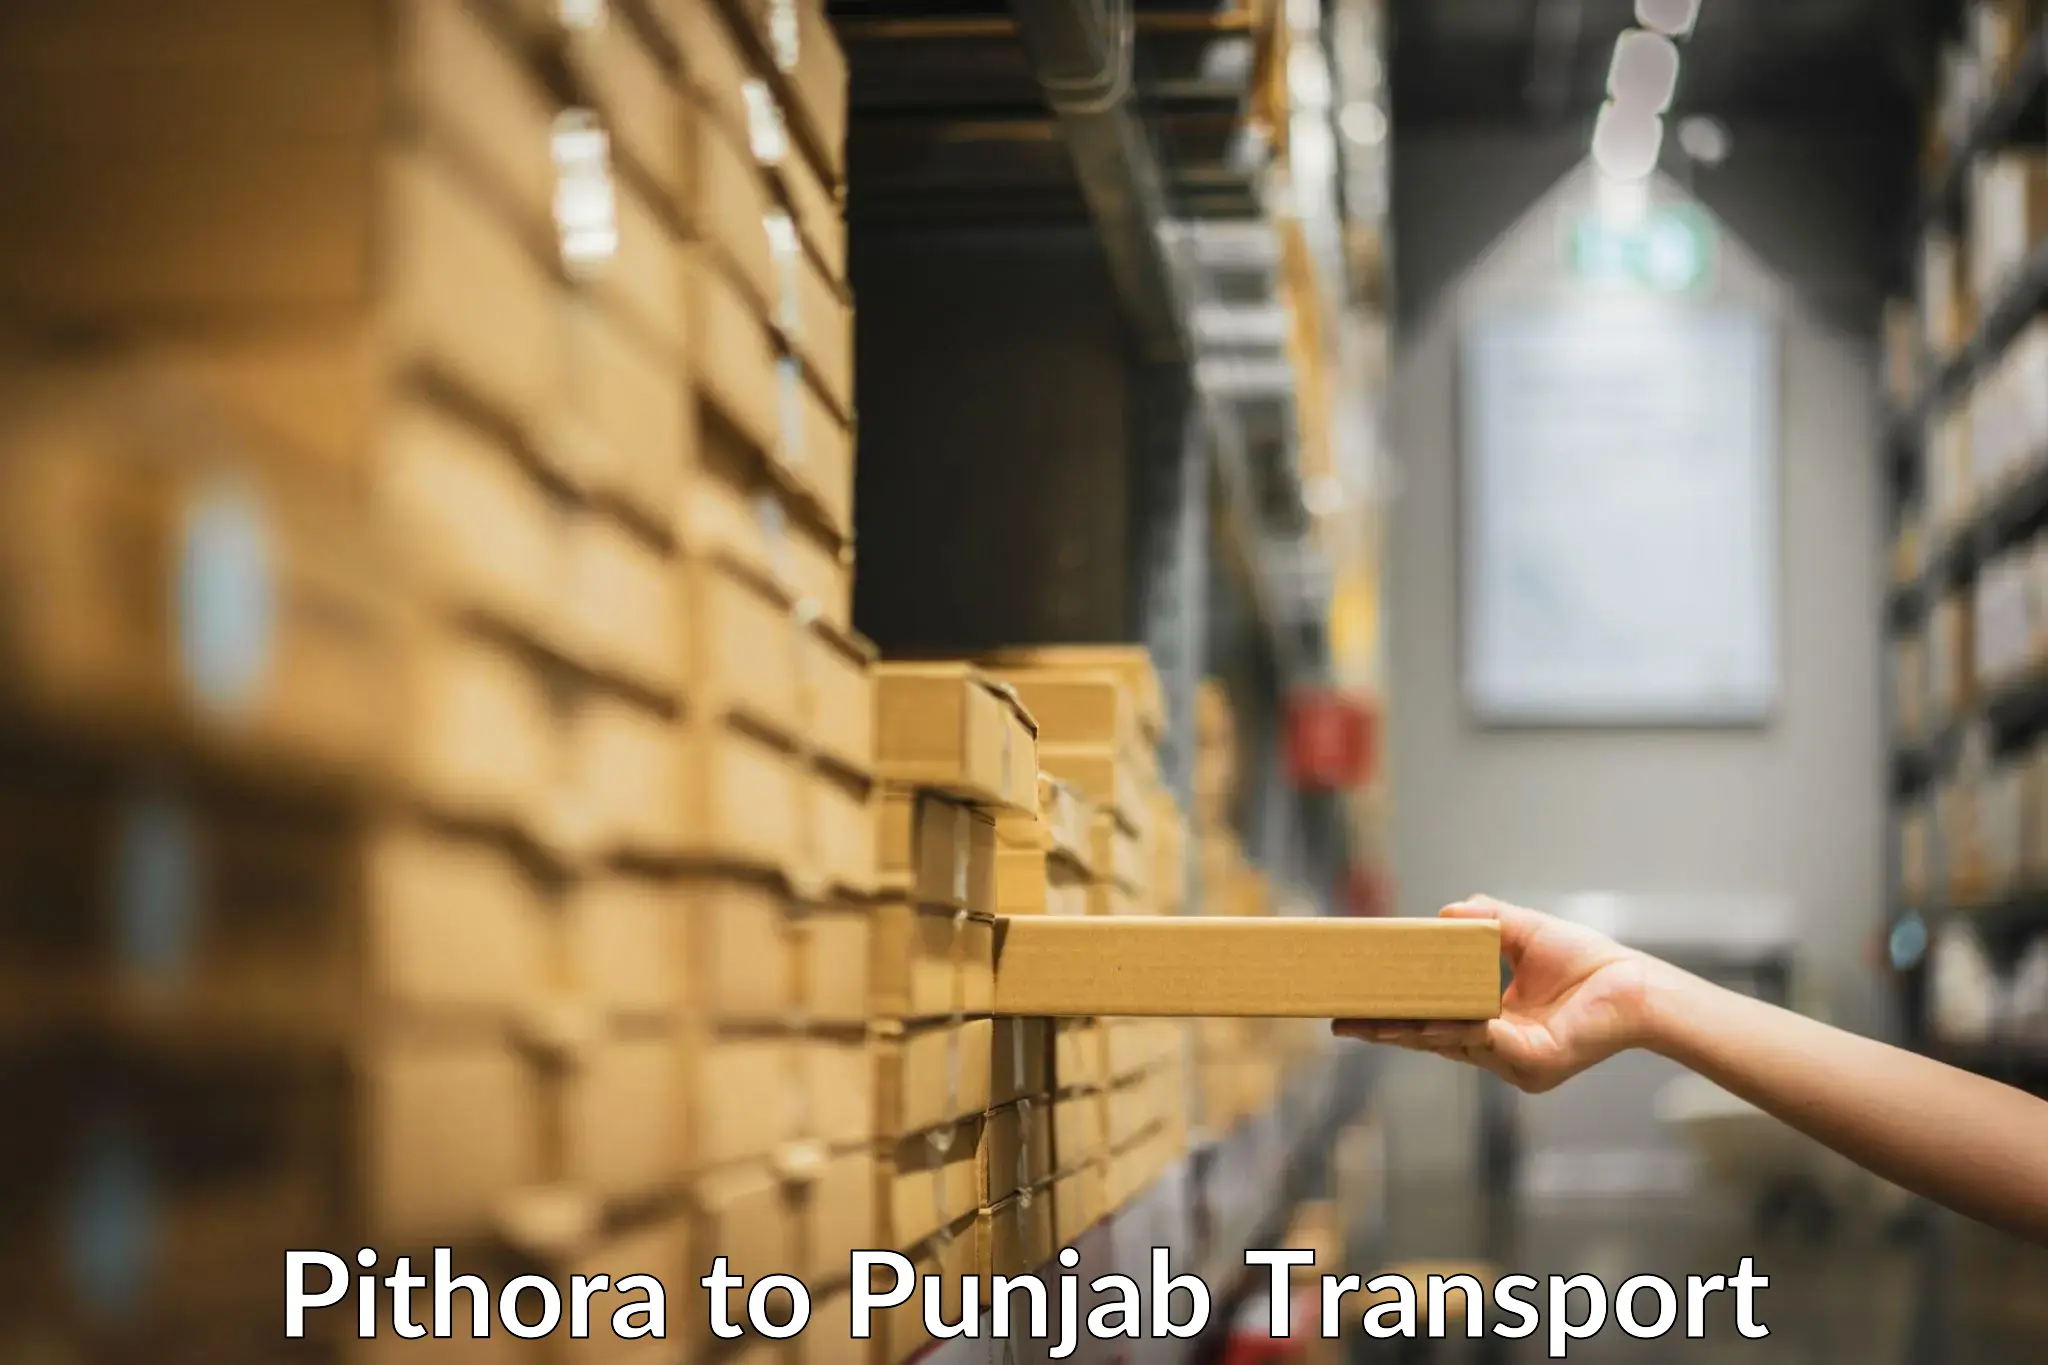 Daily transport service Pithora to Dhuri